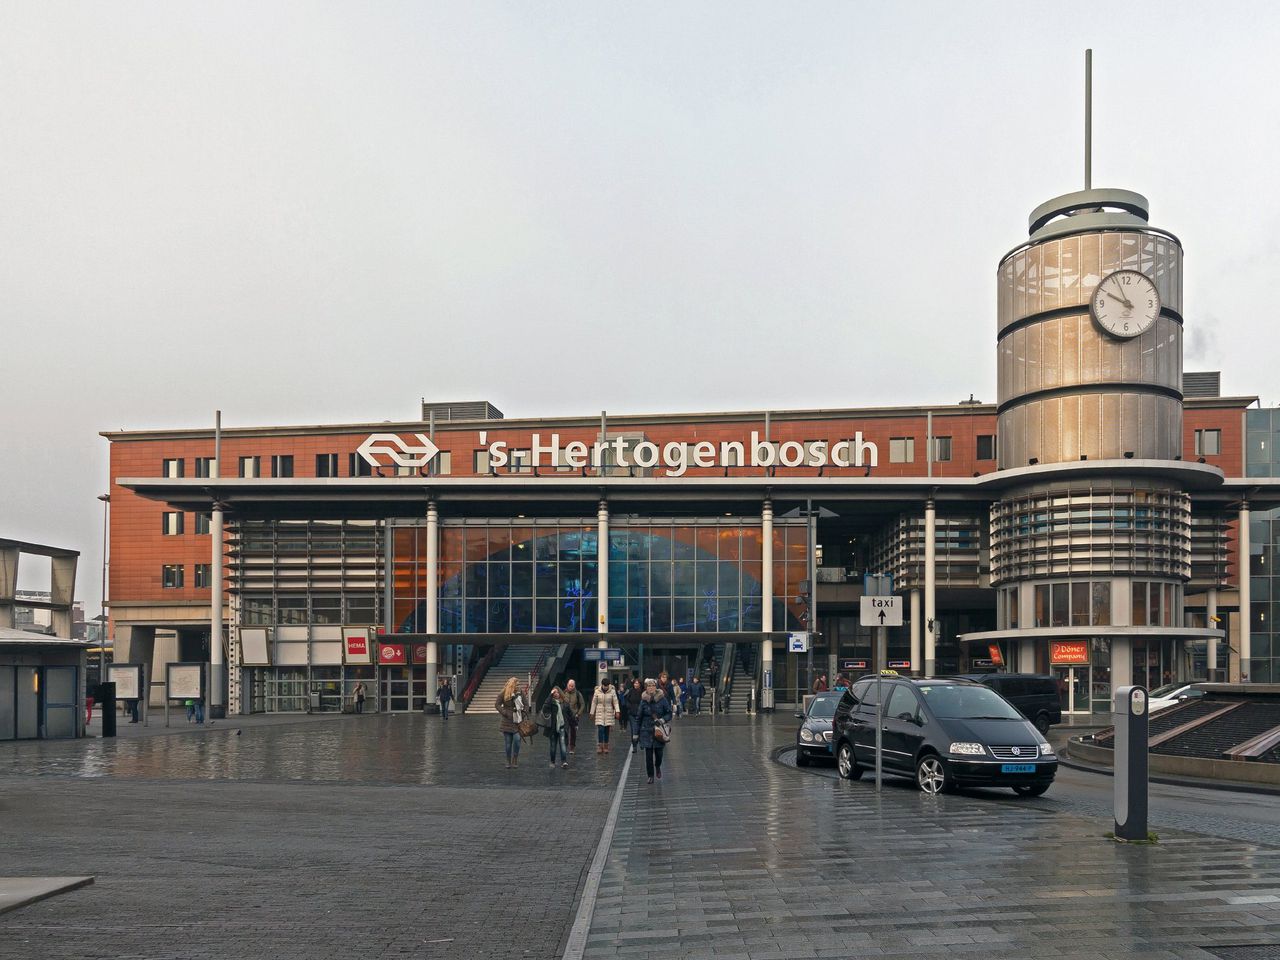 Station Den Bosch vrijgegeven na valse bommelding - NRC